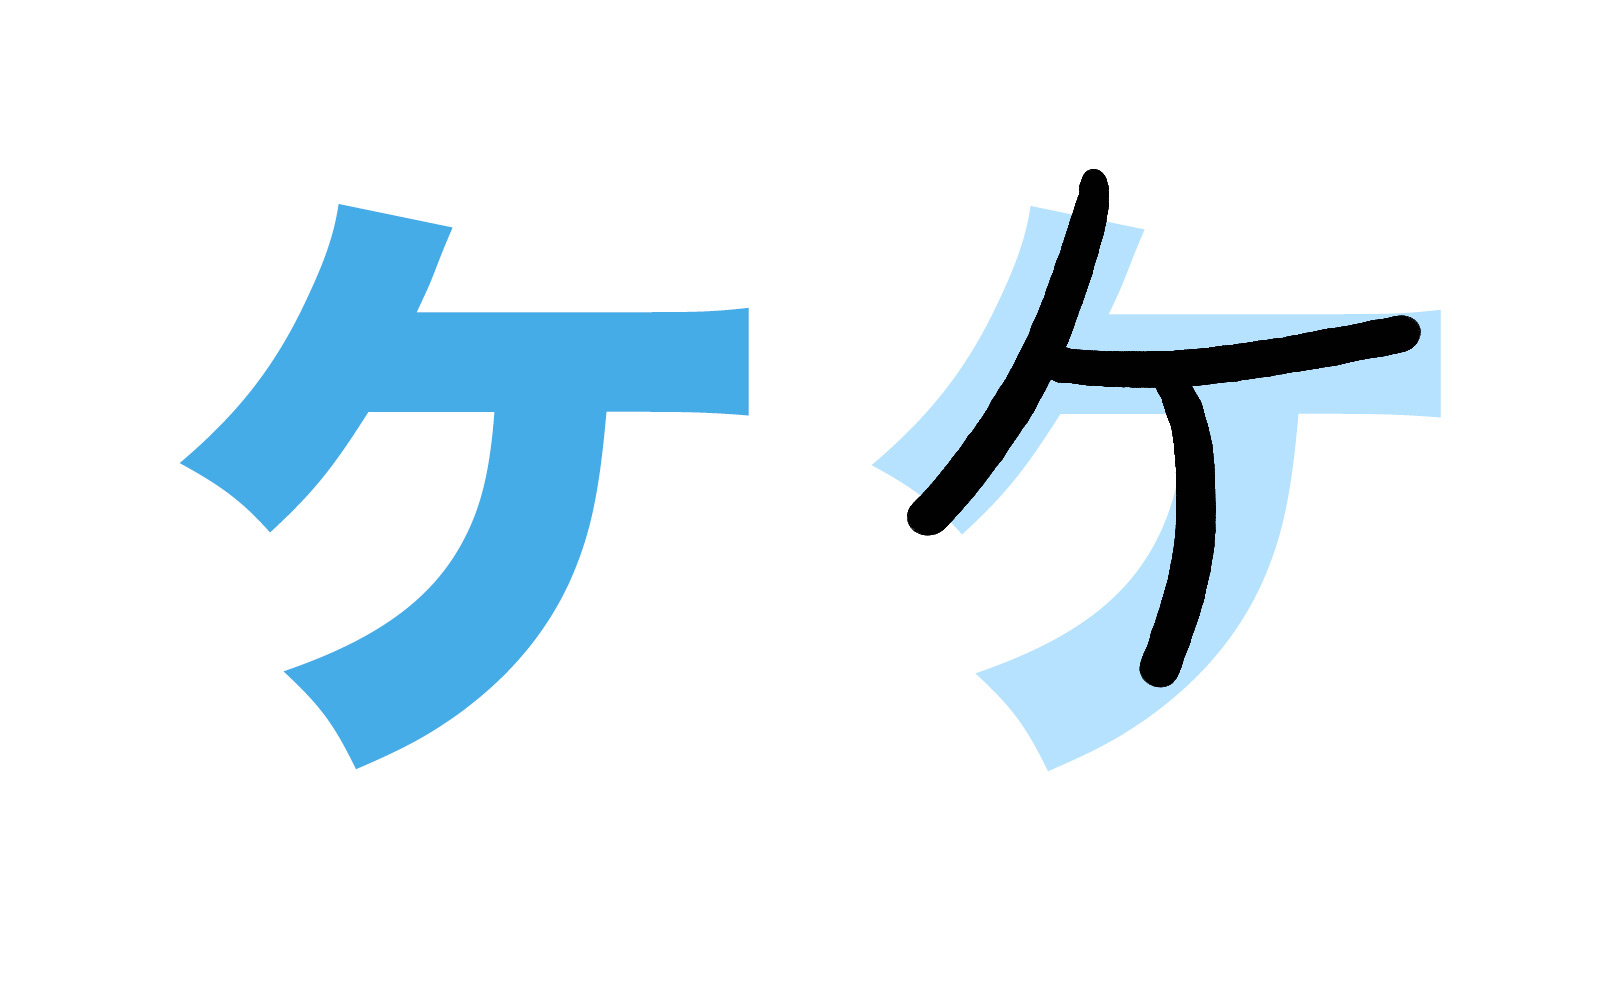 Bảng chữ cái tiếng Nhật Katakana, cách đọc, cách viết, phát âm... - ảnh 9